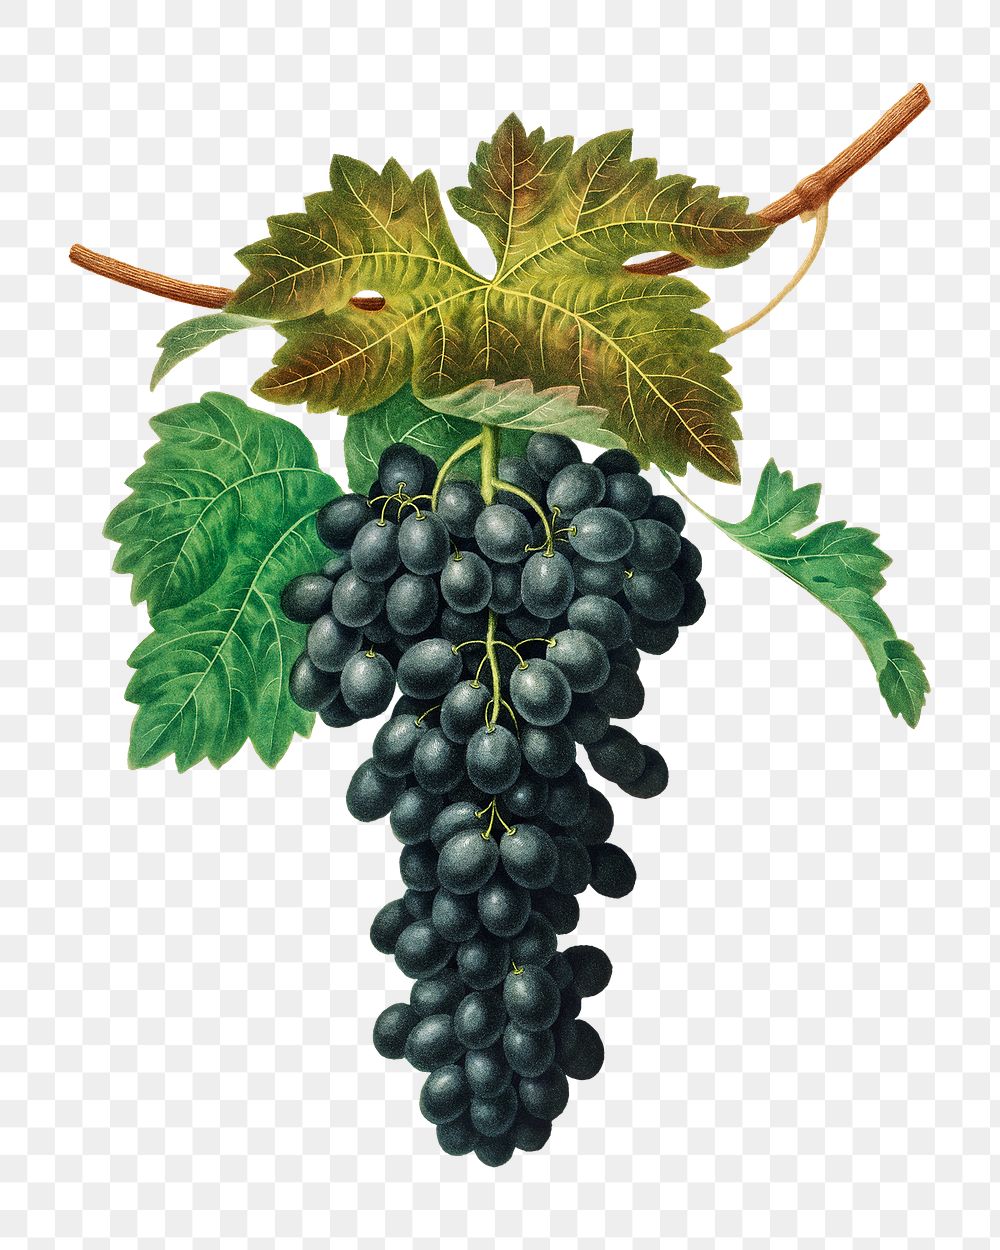 Black Prince Grape illustration transparent png